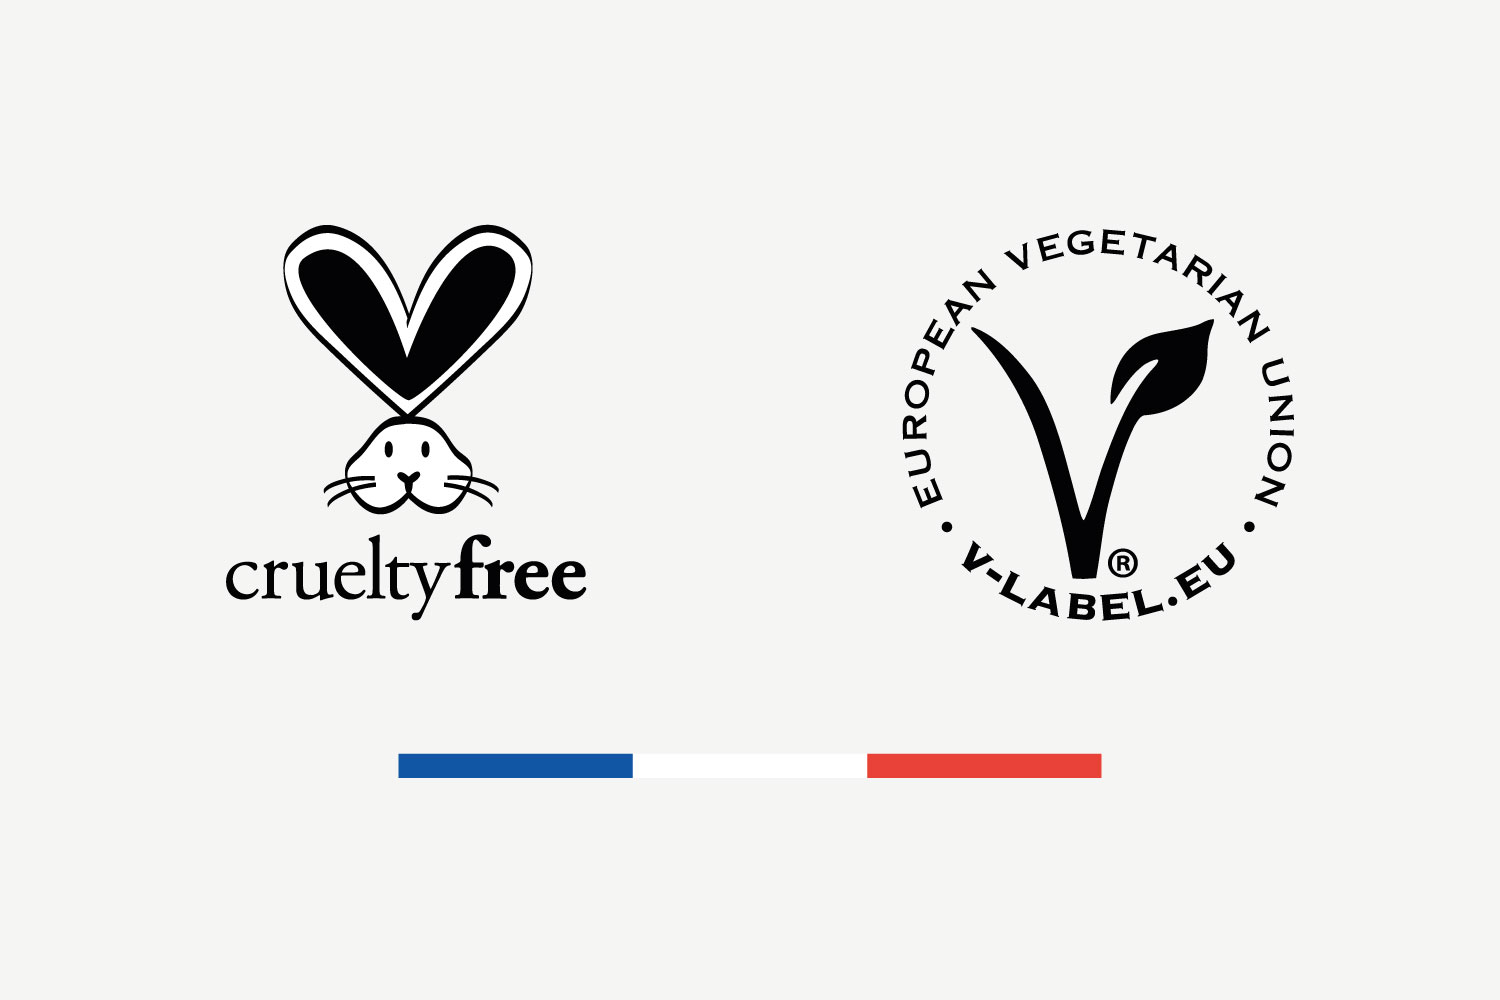 Logo cruelty free et logo vegan pour la société Mon Petit Bougeoir